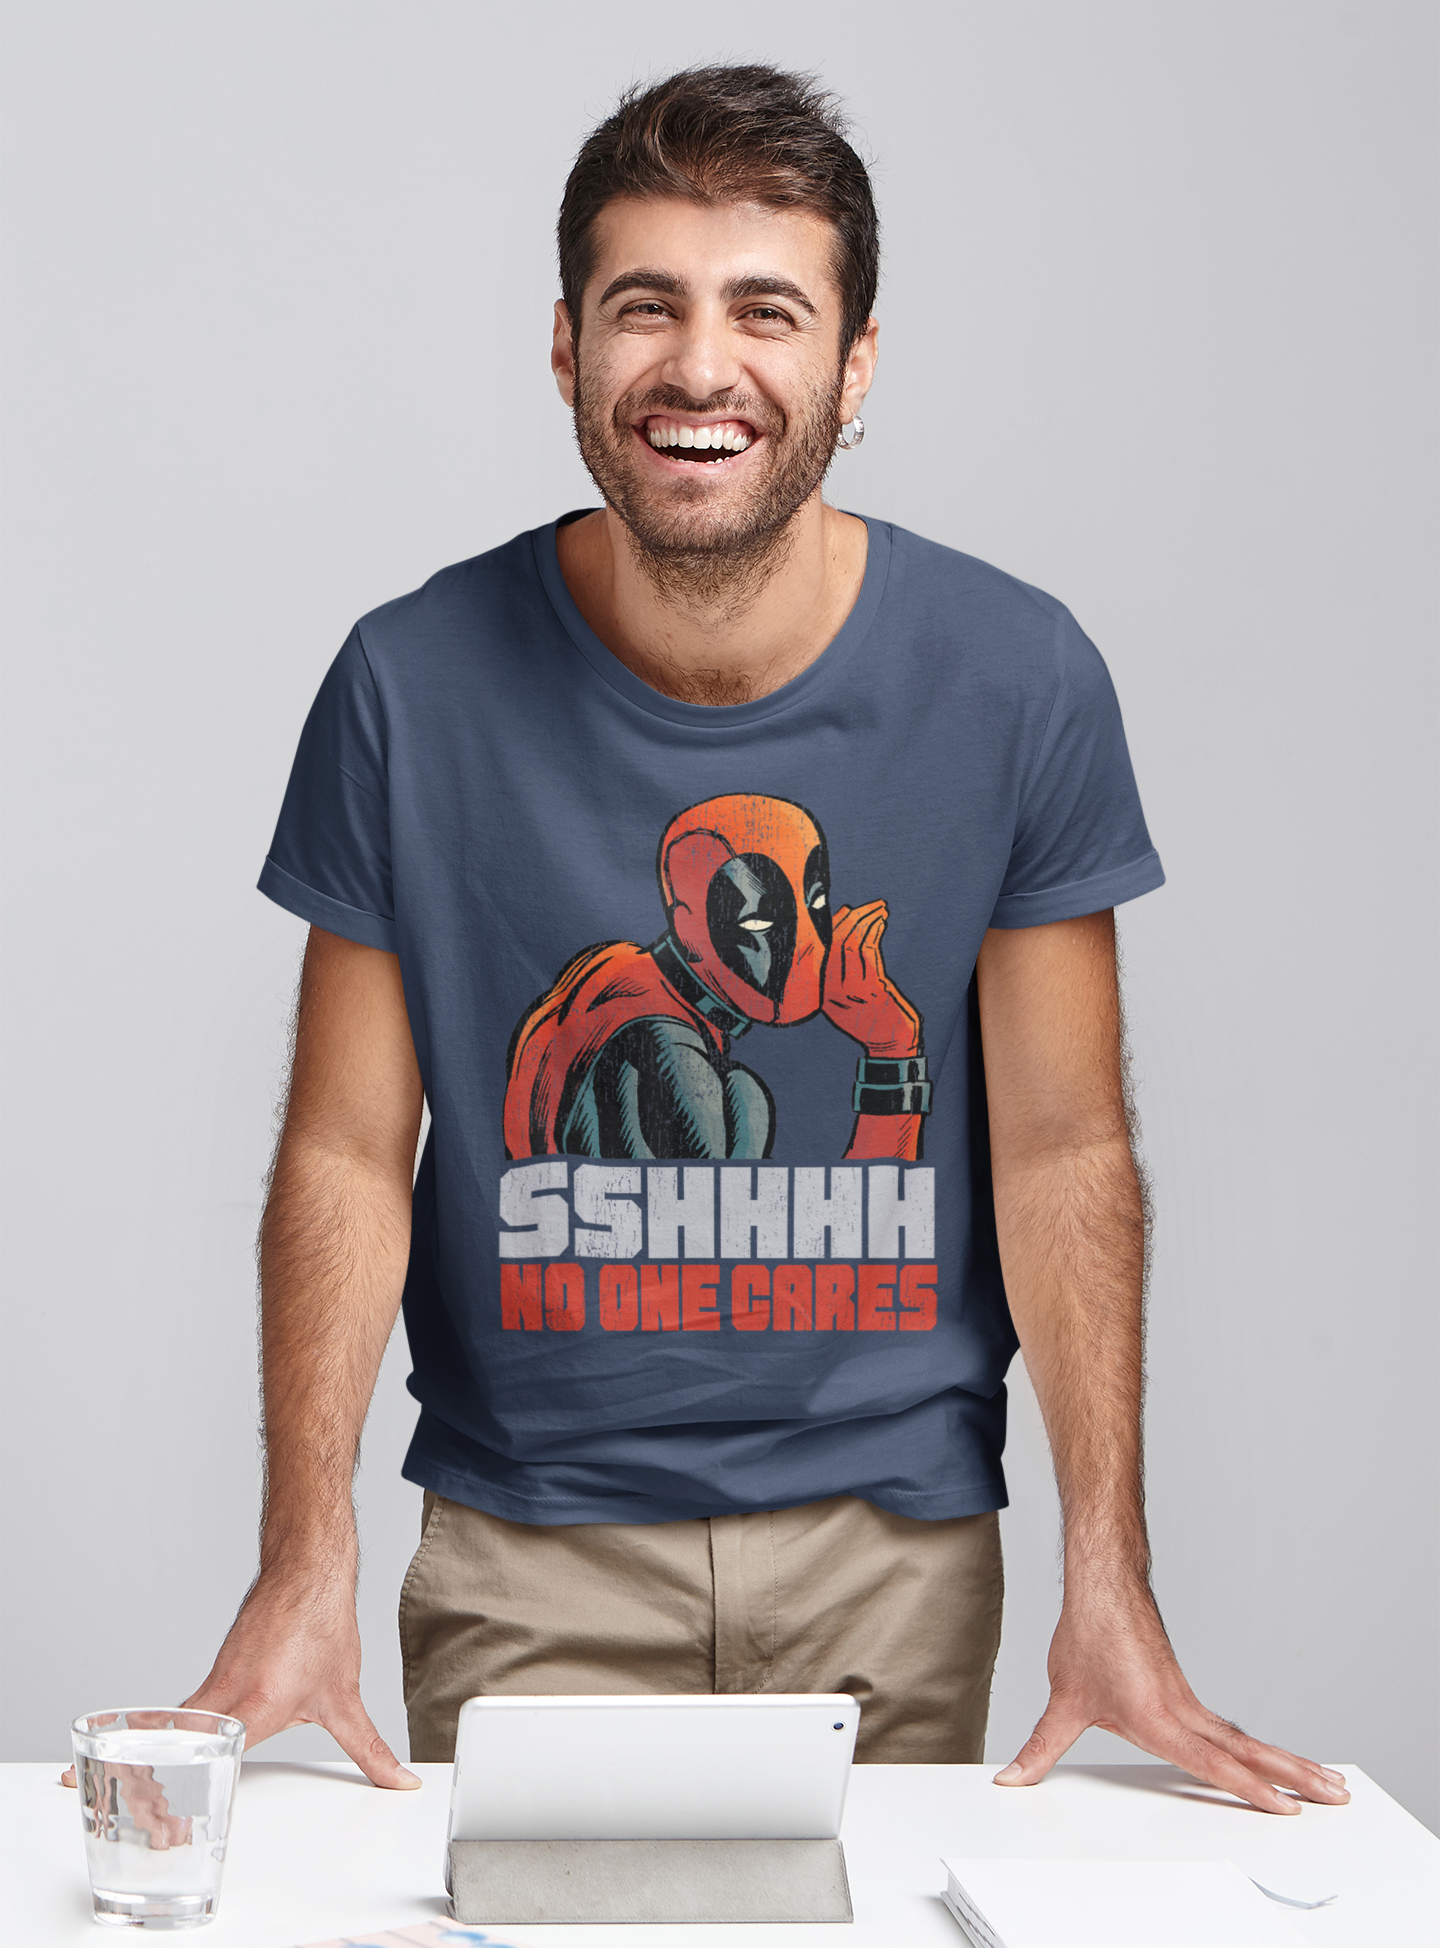 Deadpool T Shirt, SSHHHH No One Cares Whisper Tshirt, Superhero Deadpool T Shirt